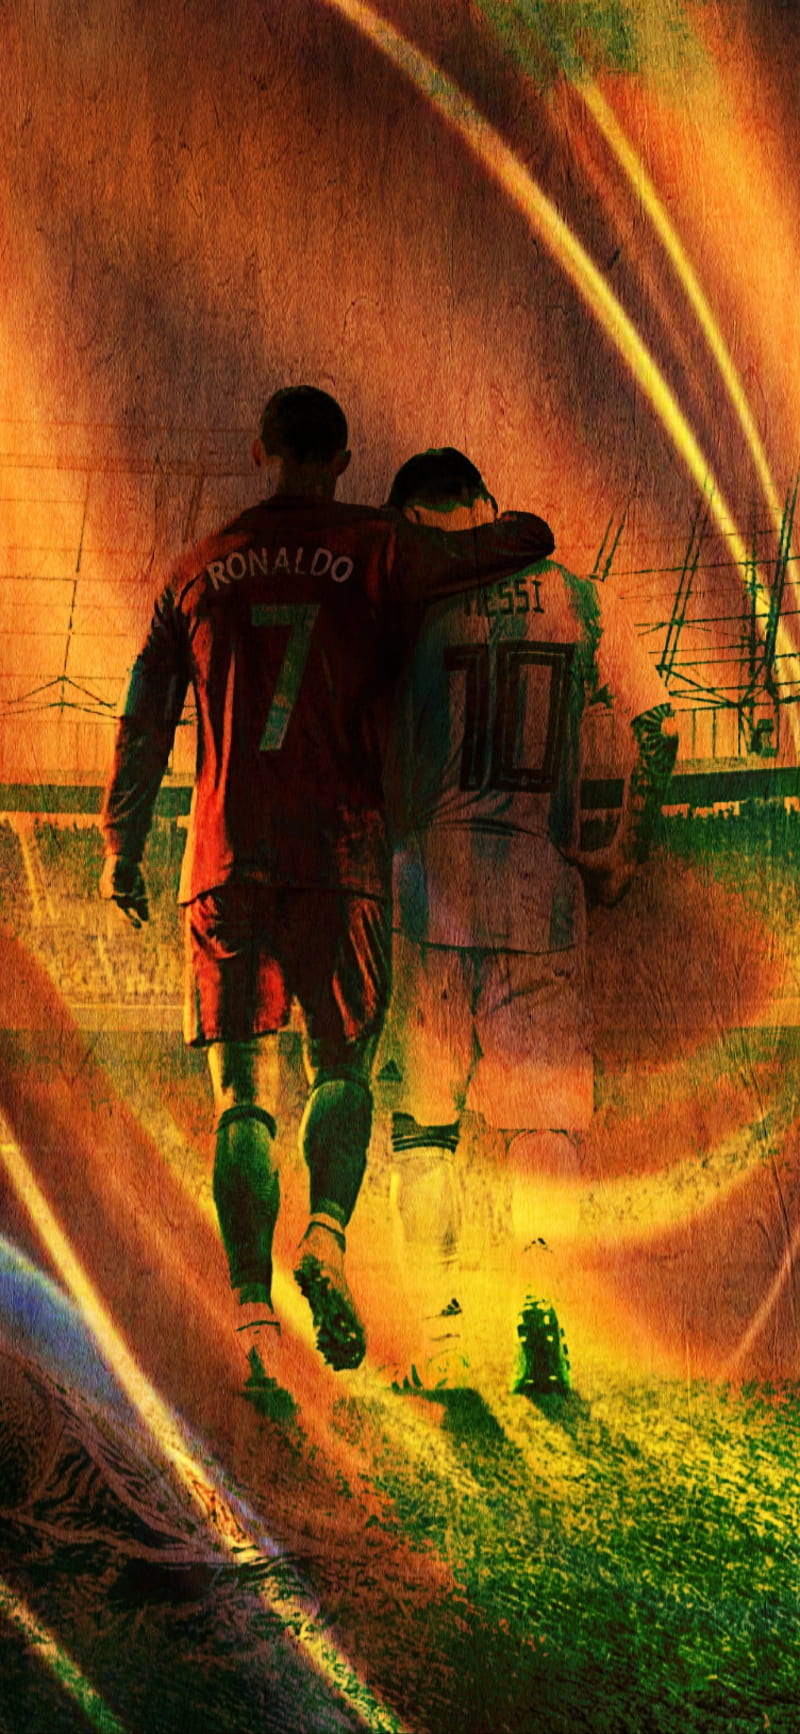 Messi và Ronaldo: Messi và Ronaldo là hai trong số những cầu thủ xuất sắc nhất mọi thời đại của làng bóng đá. Với kỹ năng điêu luyện, tốc độ và sự nhanh nhẹn, hai ngôi sao này luôn gây chú ý của cả thế giới. Hãy xem bức ảnh liên quan để chiêm ngưỡng những khoảnh khắc ấn tượng của Messi và Ronaldo.